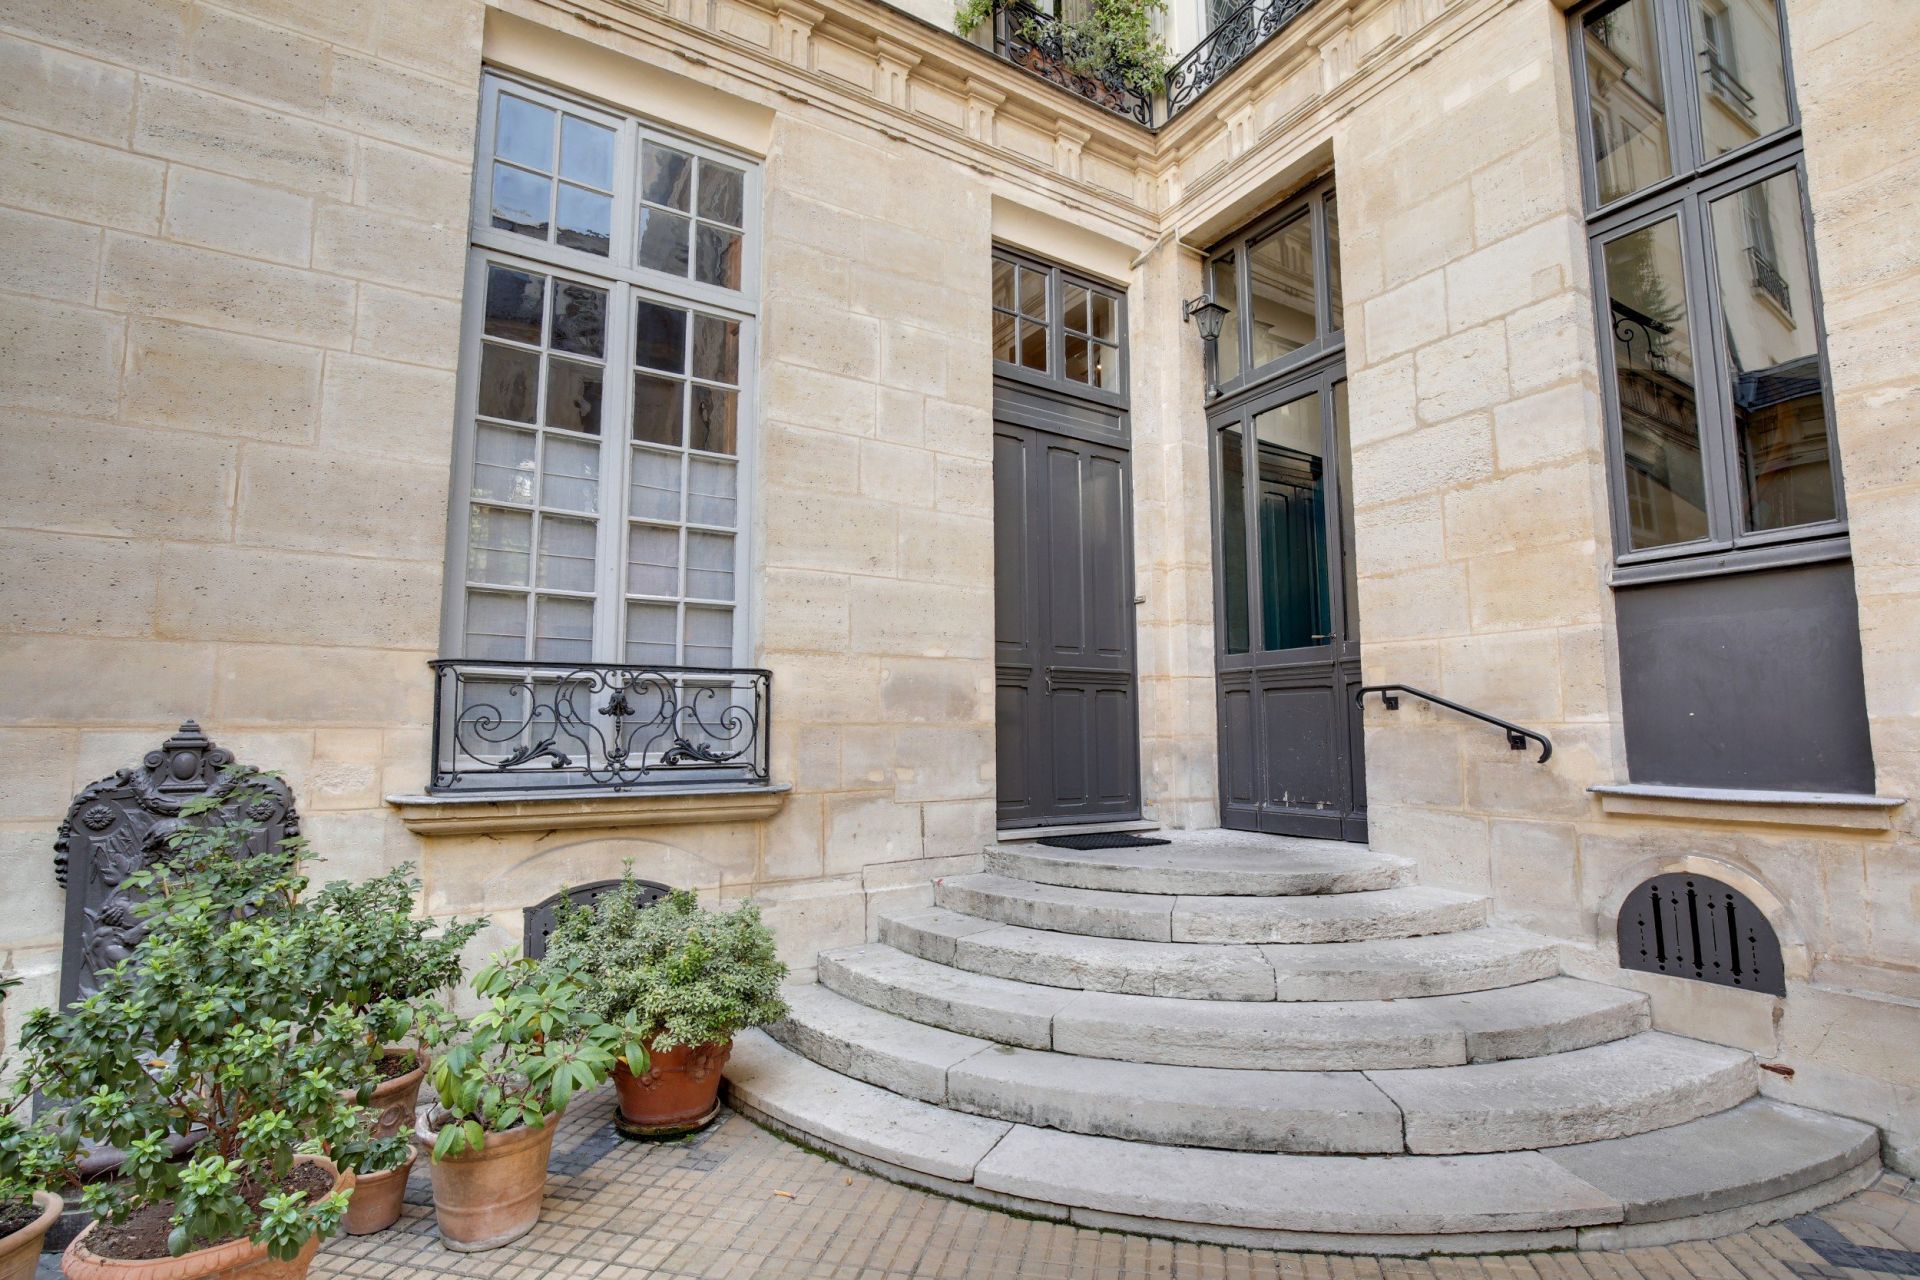 Portal Inmobiliario de Lujo en Paris, presenta piso de lujo venta en Saint-Germain-des-Prés, apartamento exclusivo para comprar y casas lujosas en venta en Francia.